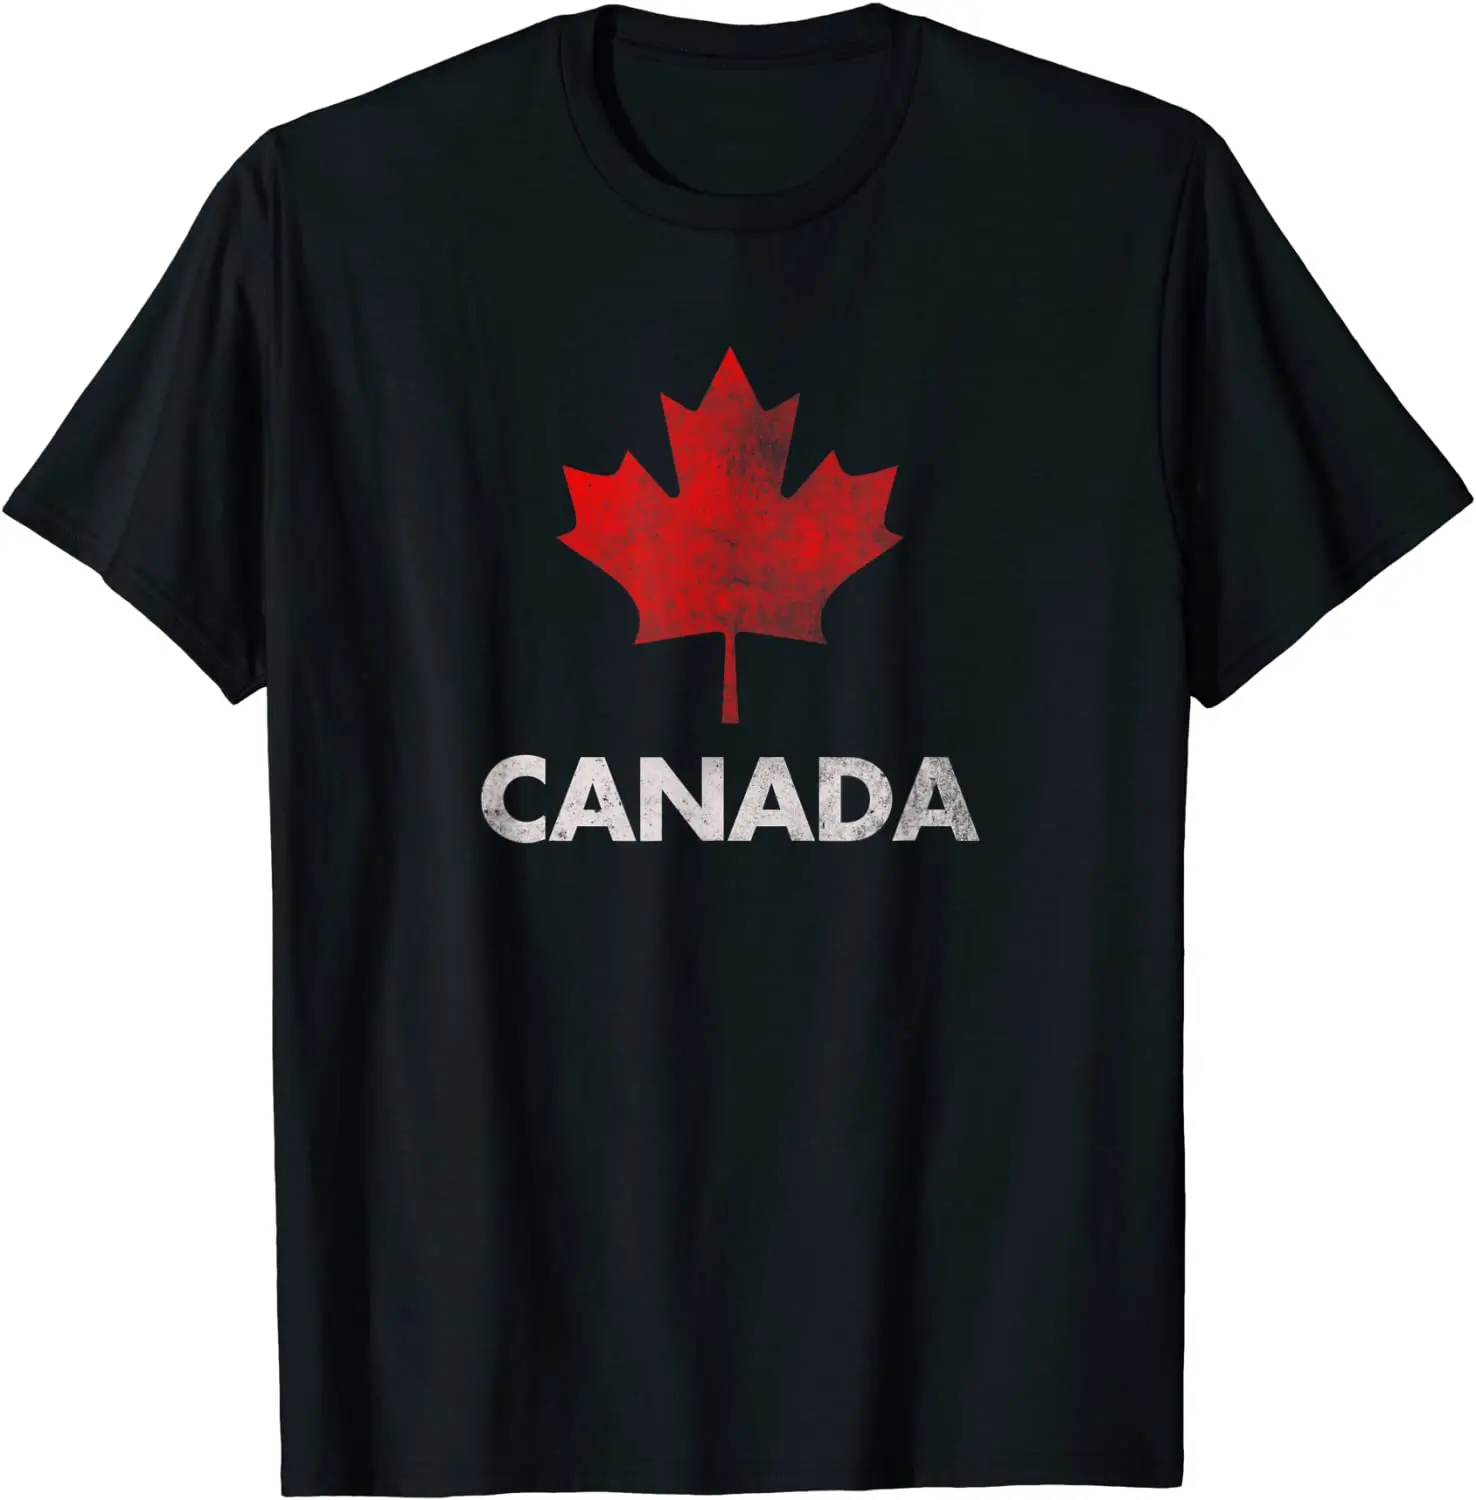 

Винтажная рубашка в стиле ретро с канадским Кленовым листом, Мужская футболка с флагом Канады, Короткие повседневные рубашки из 100% хлопка